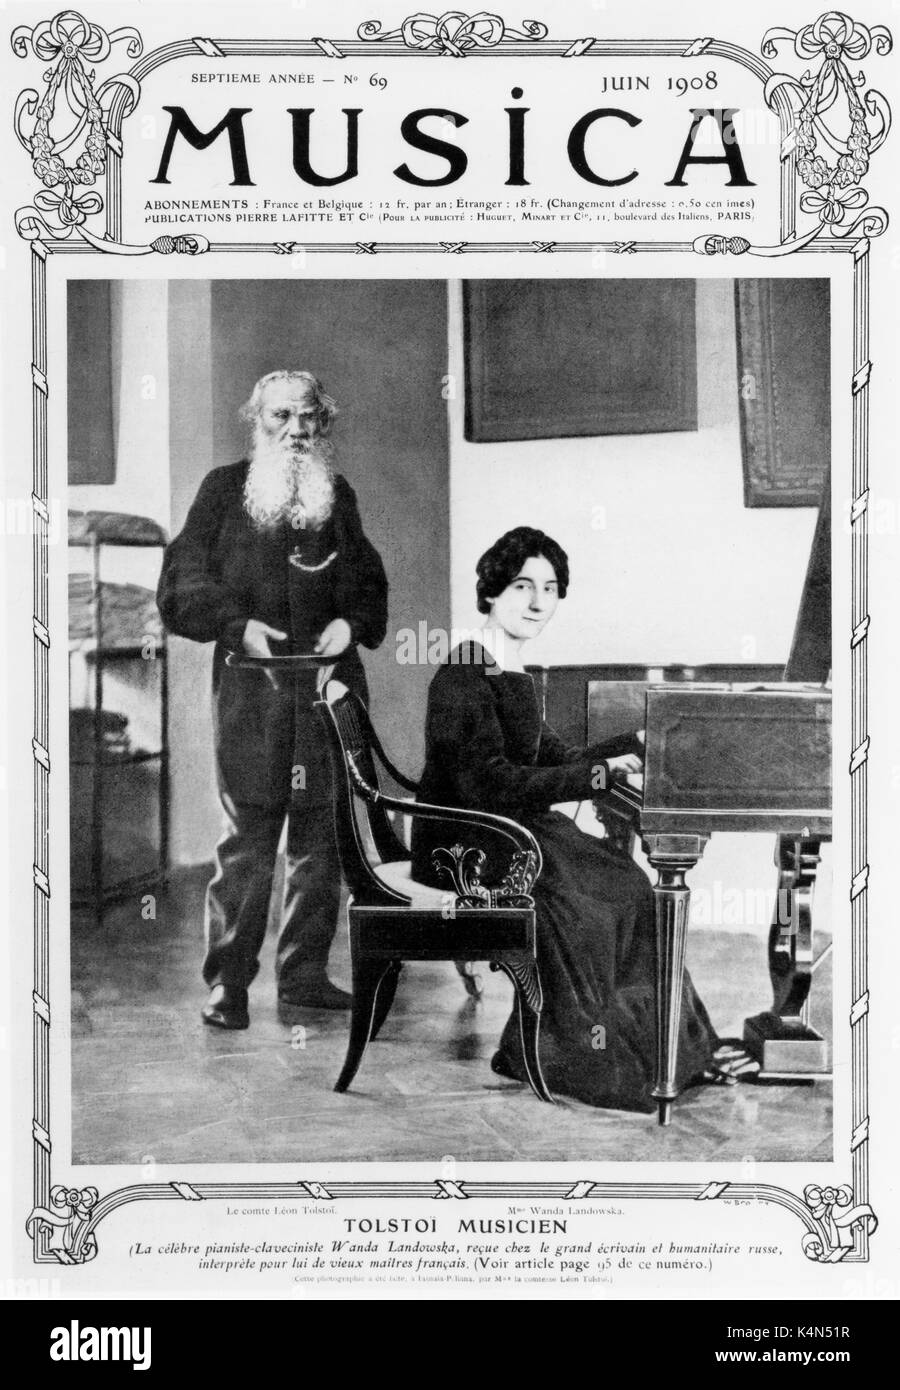 LANDOWSKA, Wanda (Alexandra) jouant le clavecin à la maison. Couverture de magazine 'Musica' juin 1908. Claveciniste et pianiste polonais (1879-1959). Banque D'Images